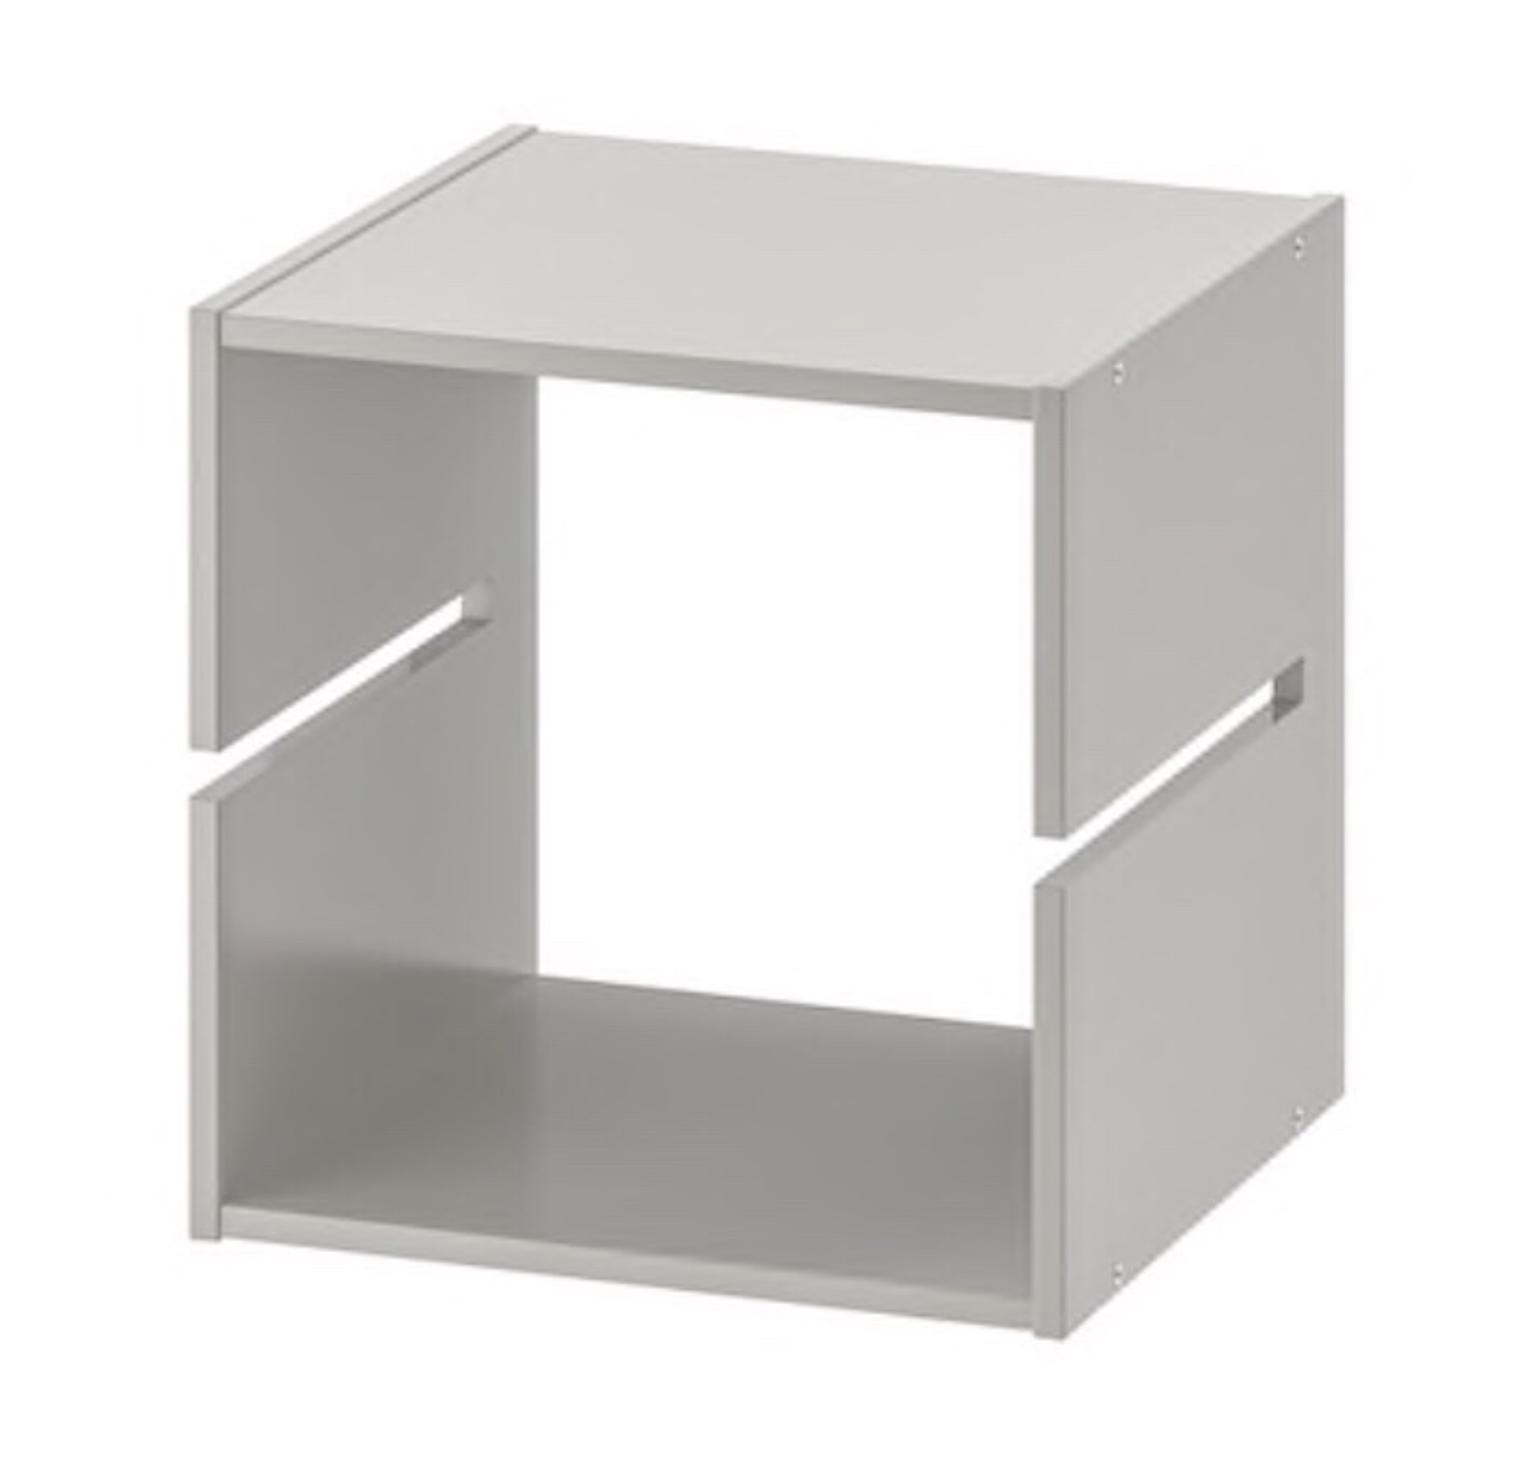 Ikea Kallax Shelf Divider Insert In Ub10 Hillingdon Fur 6 00